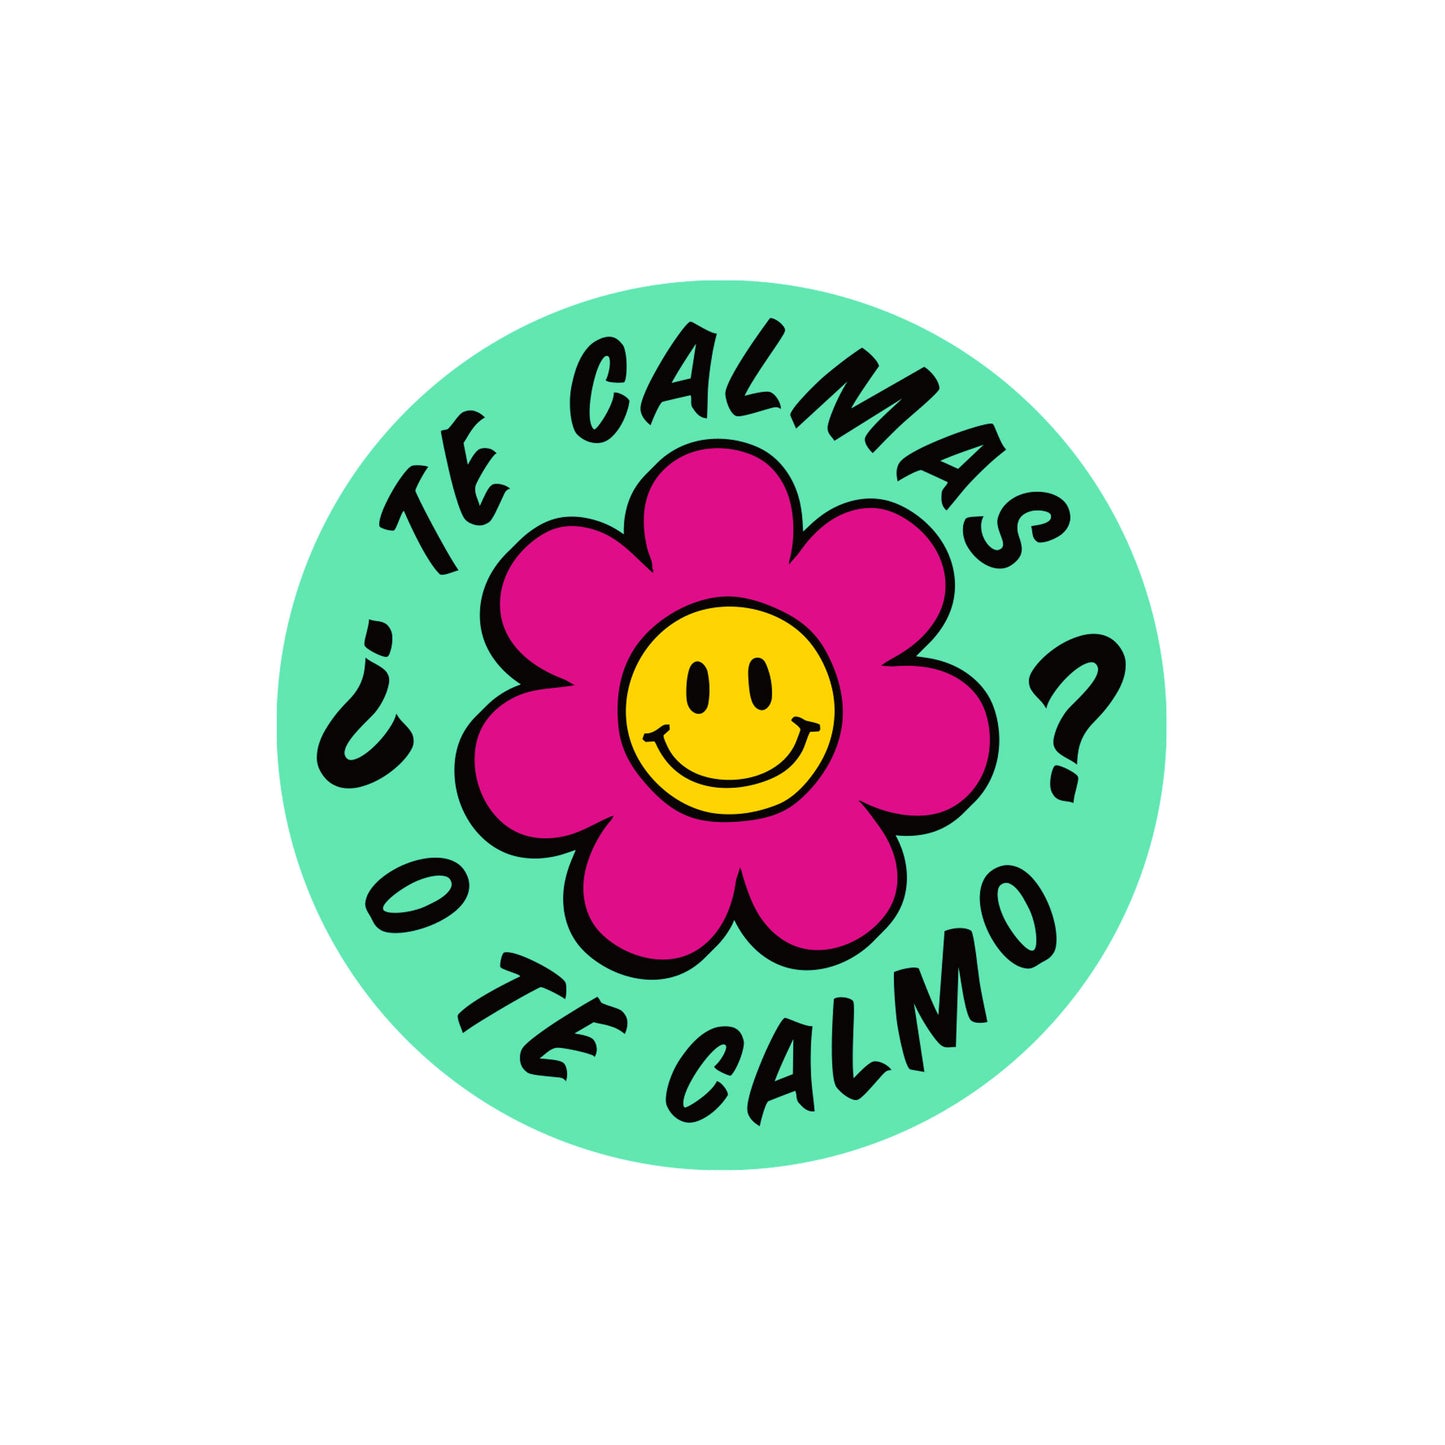 Te Calmas o Te Calmo Vinyl Sticker